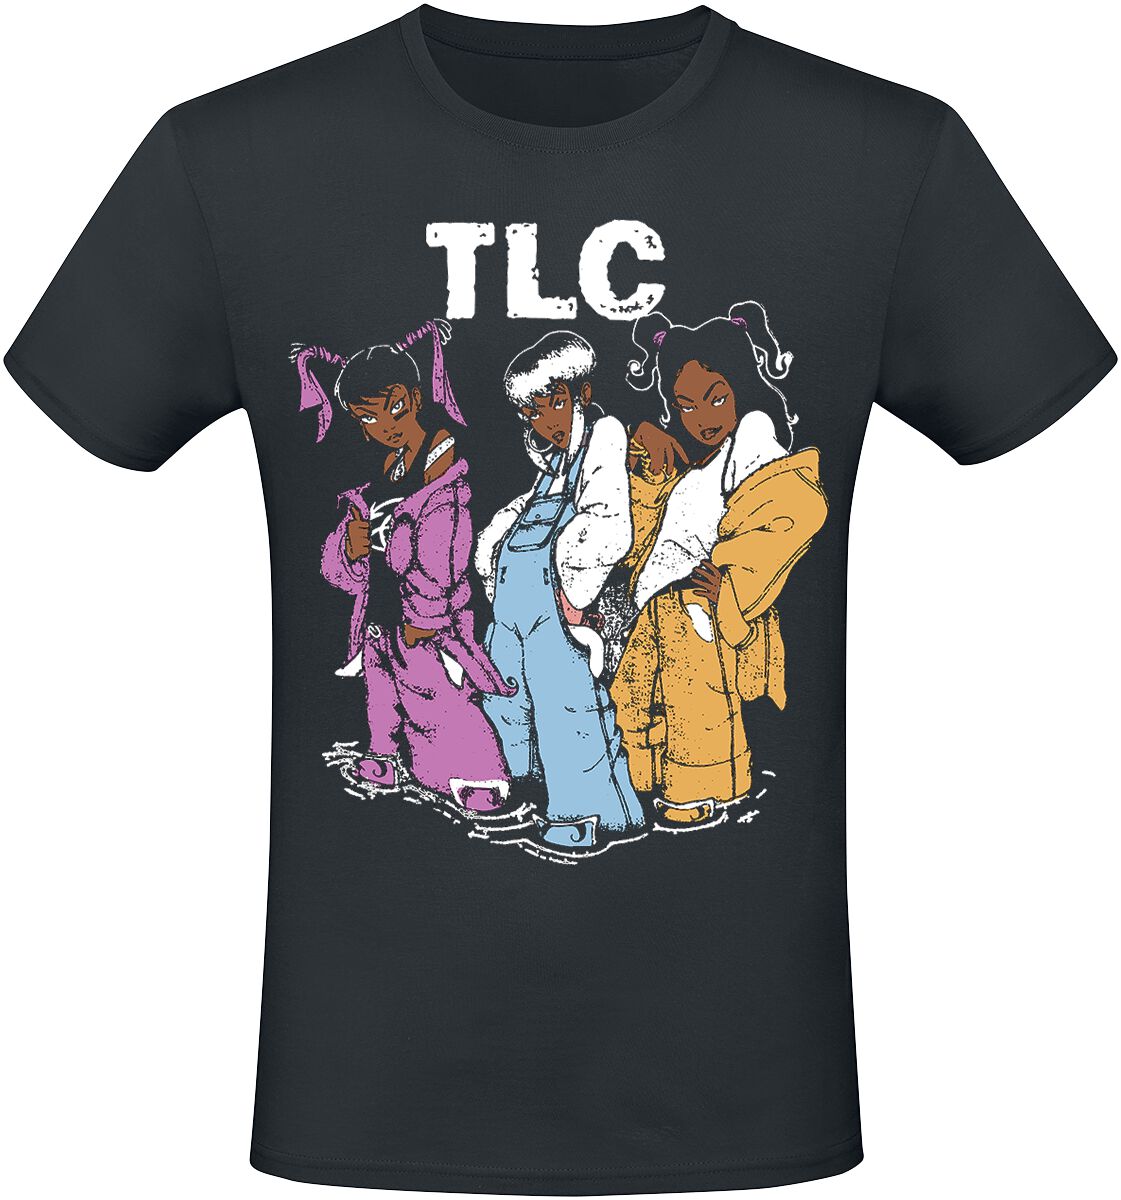 TLC T-Shirt - Cartoons - S bis 3XL - für Männer - Größe 3XL - schwarz  - Lizenziertes Merchandise!